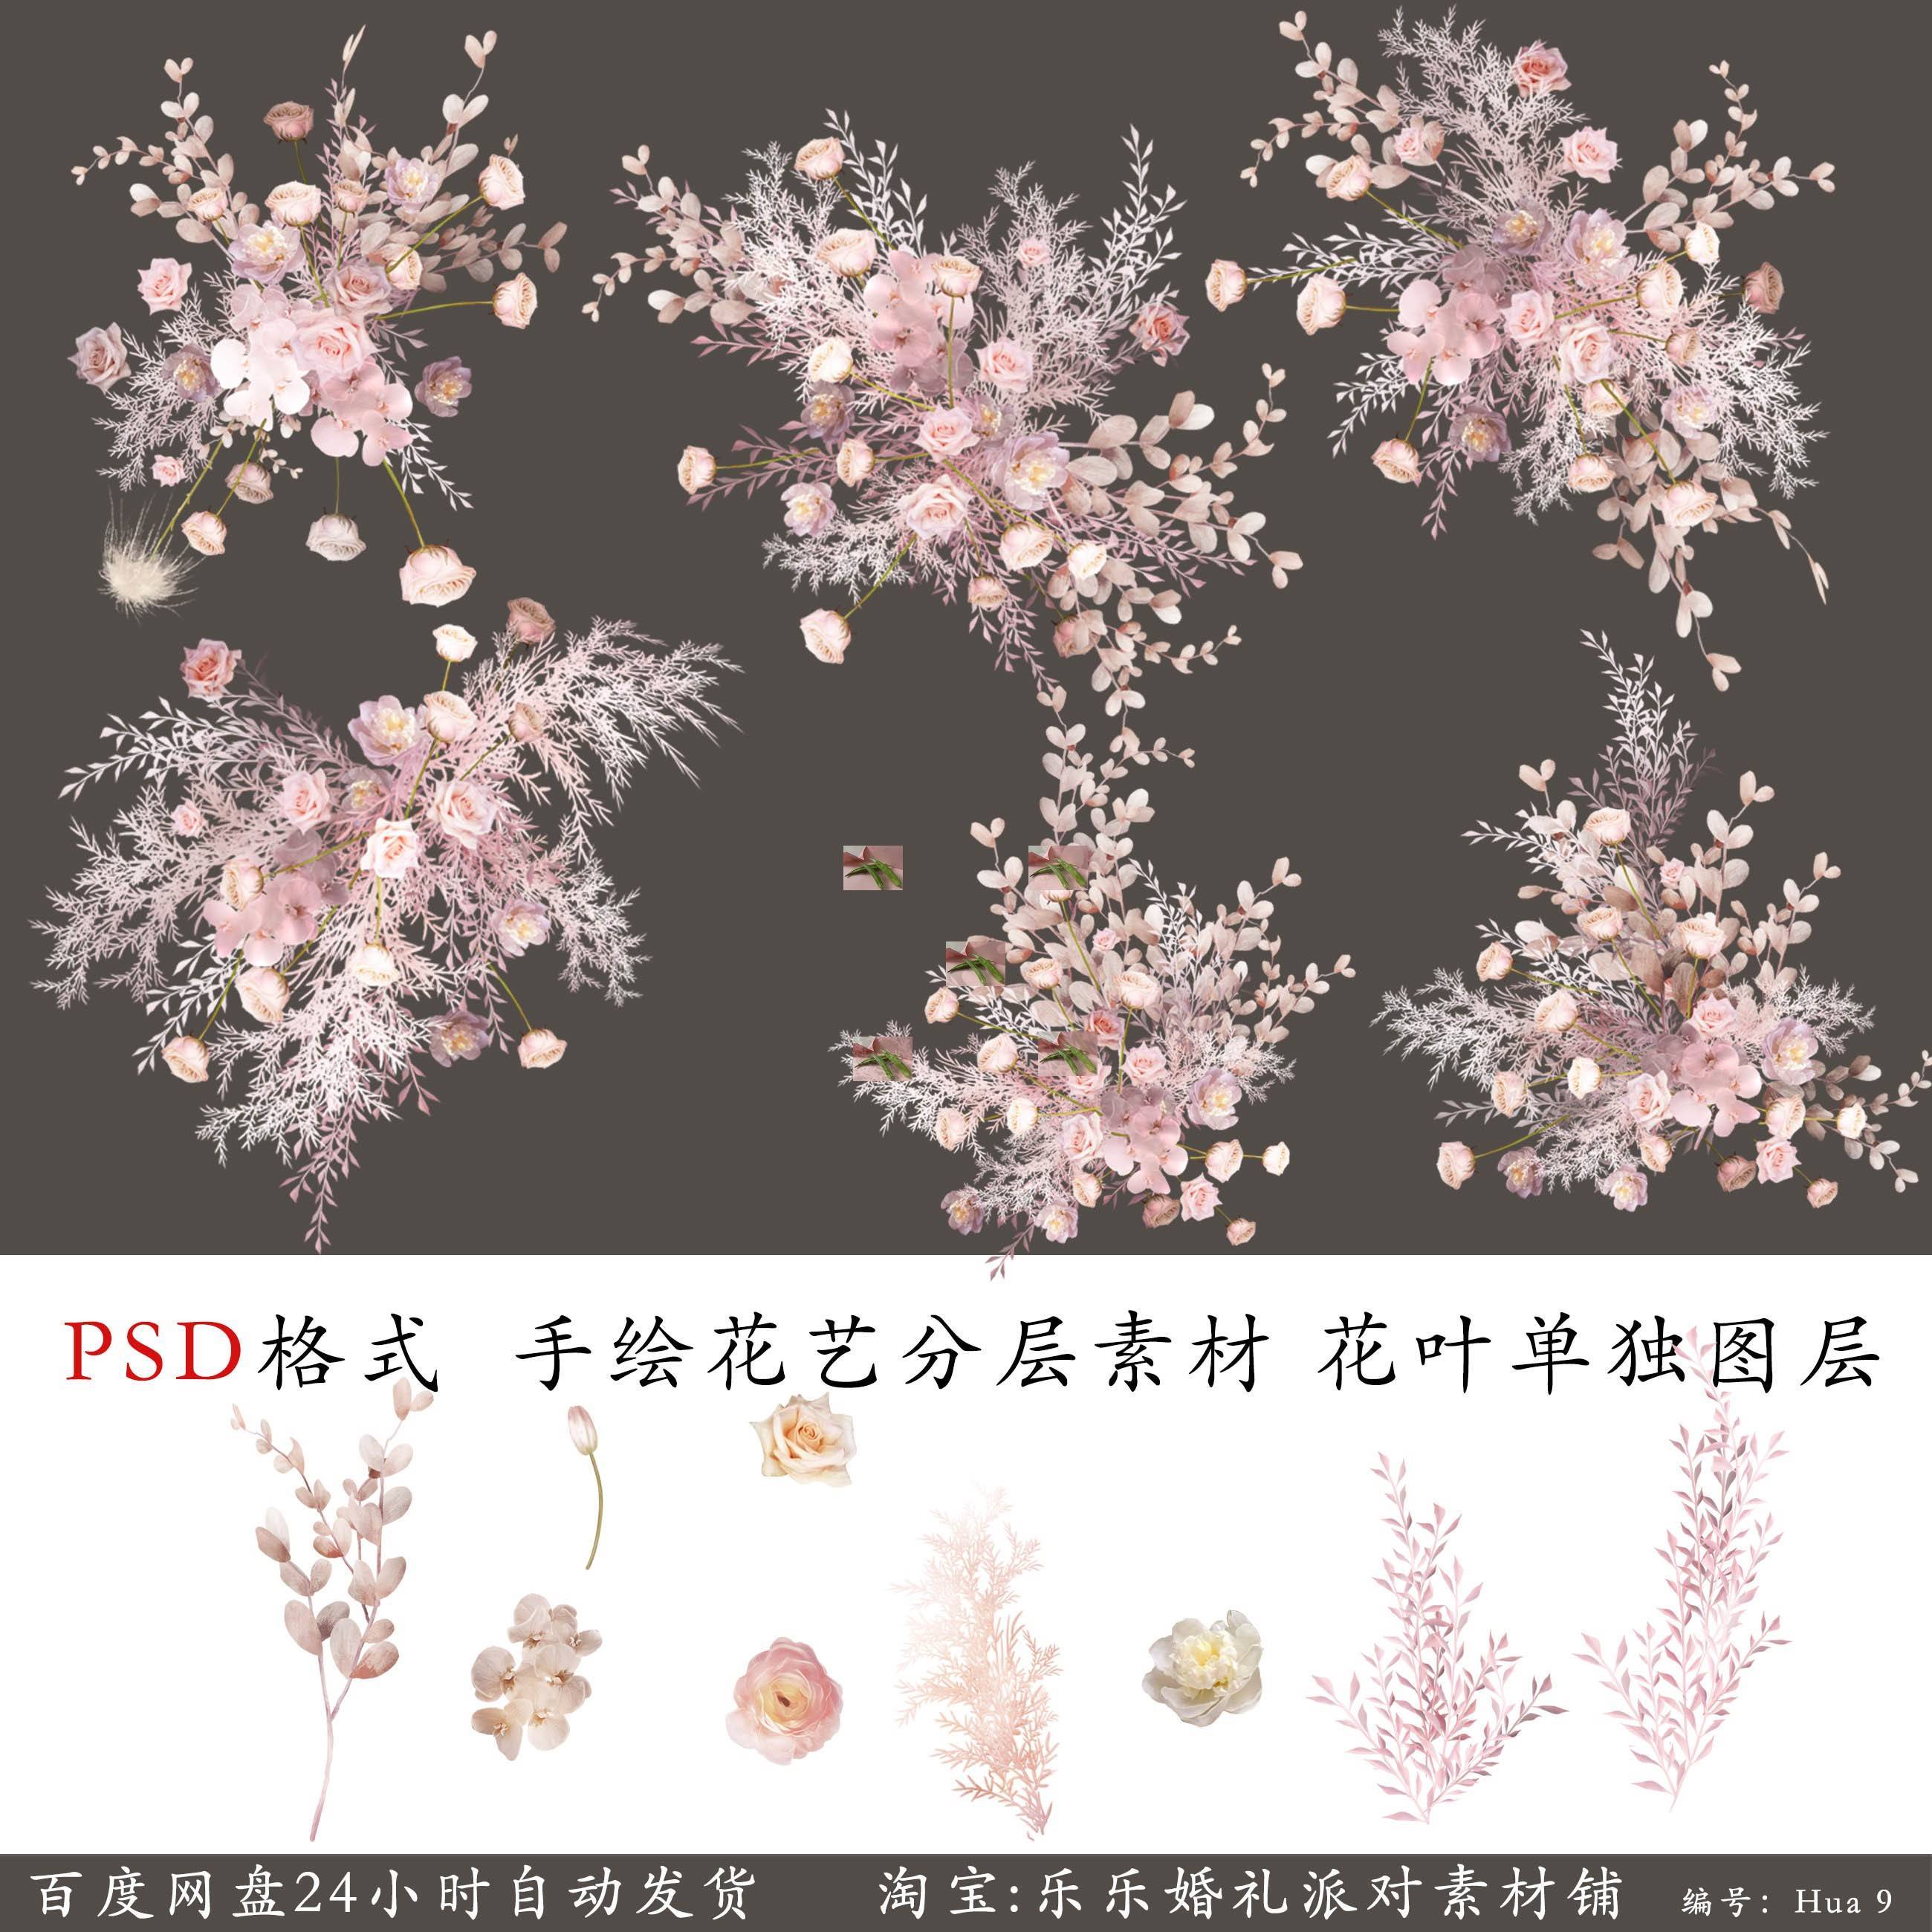 粉白色花艺手绘素材粉色婚礼效果图花艺设计素材花材单枝分层Psd